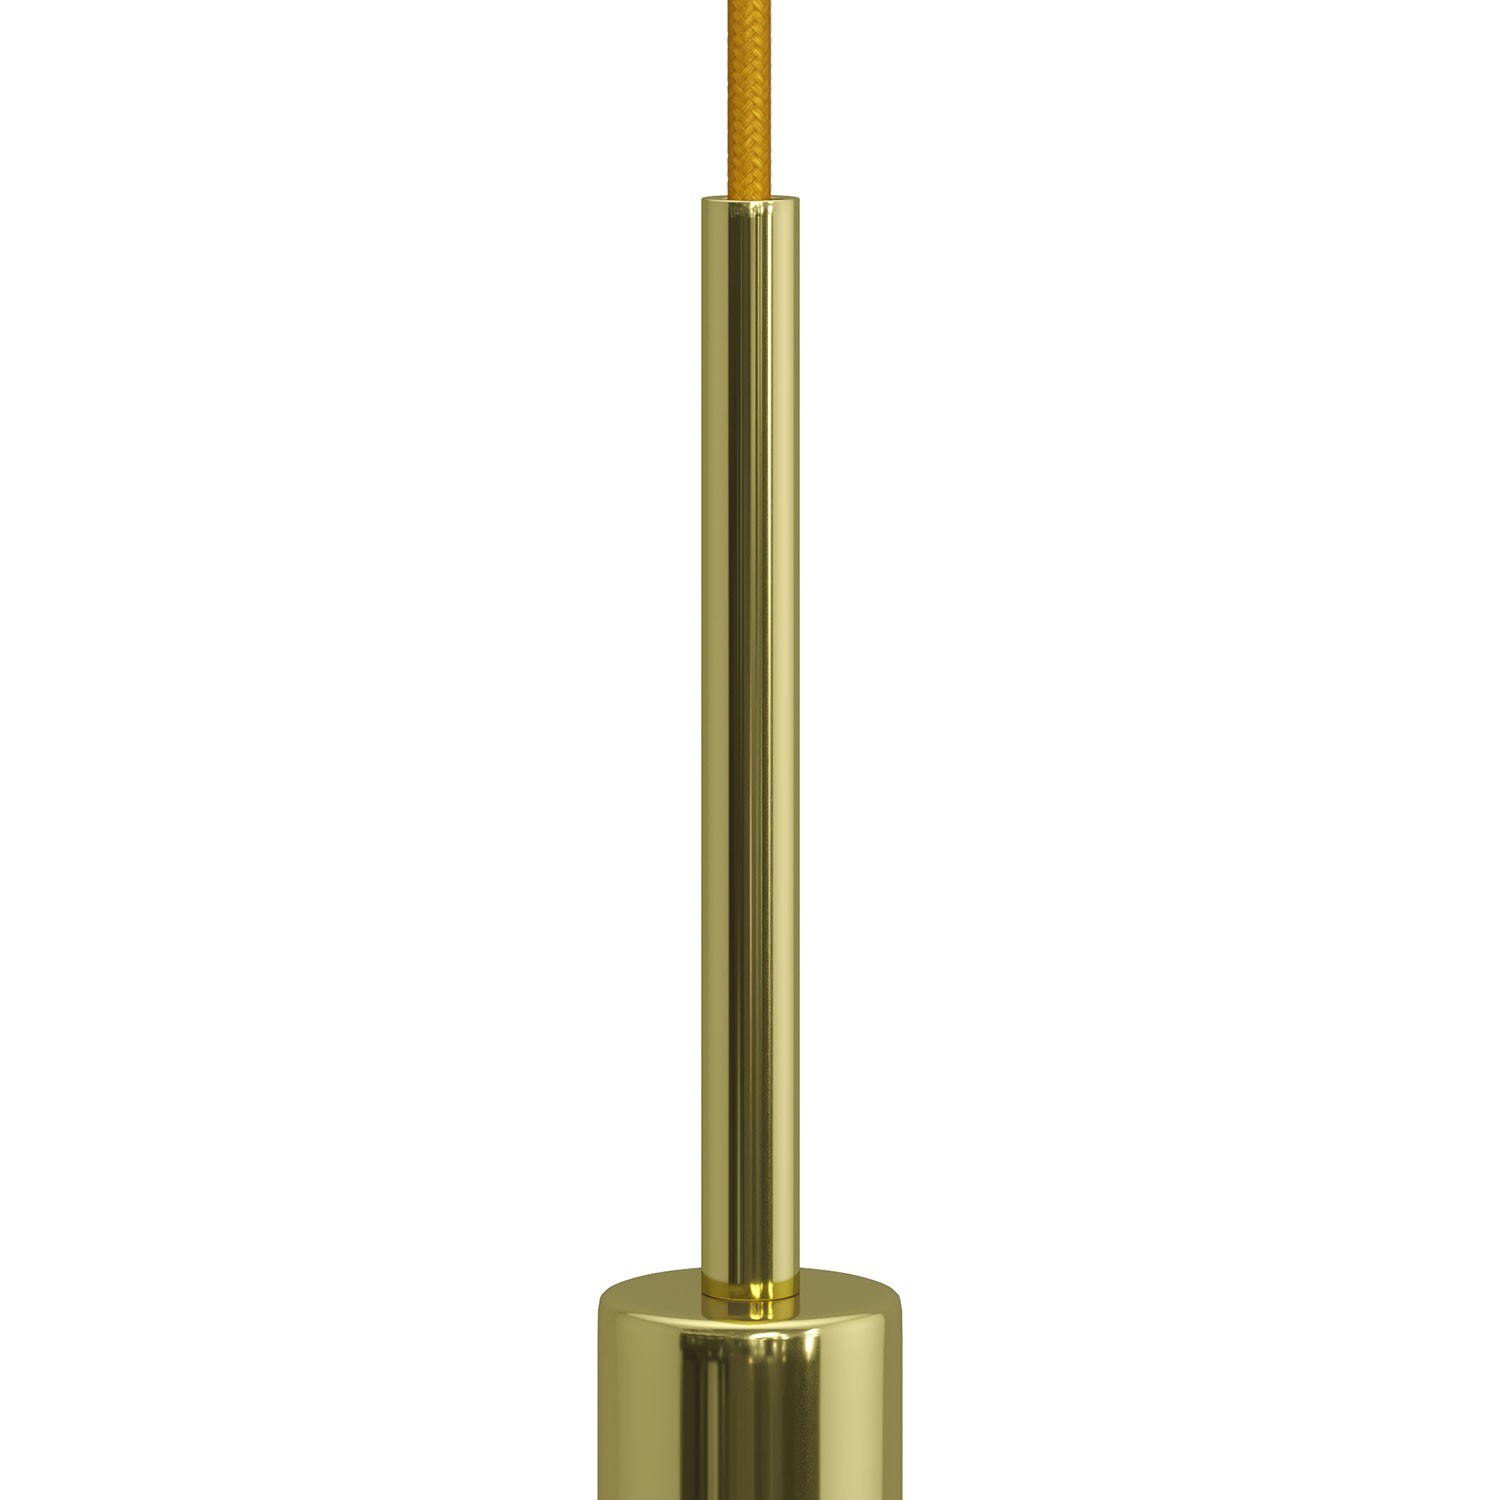 Cylindrisk dragavlastare i metall 15 cm lång komplett med gängstång, mutter samt låsbricka